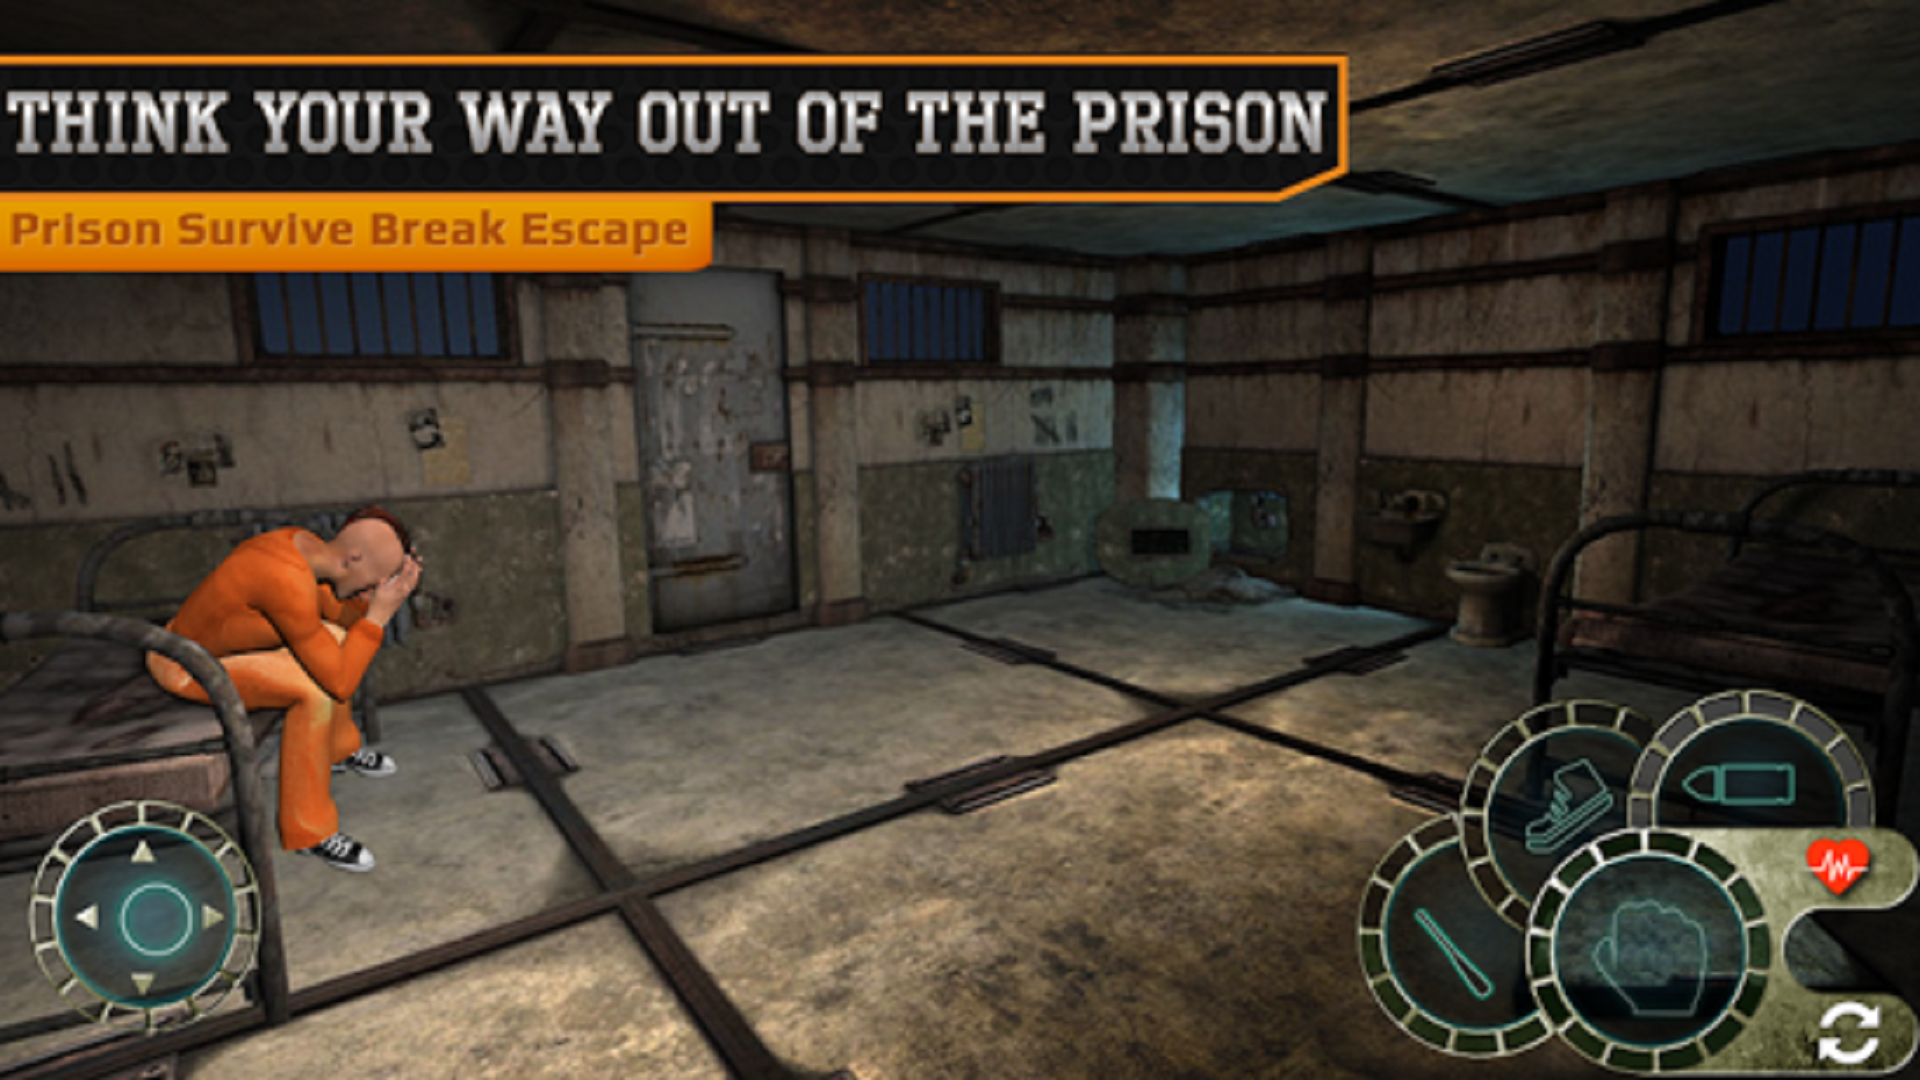 Prison Survive Break Escape Free Play And Download Gamebass Com - escape room roblox prison break walkthrough